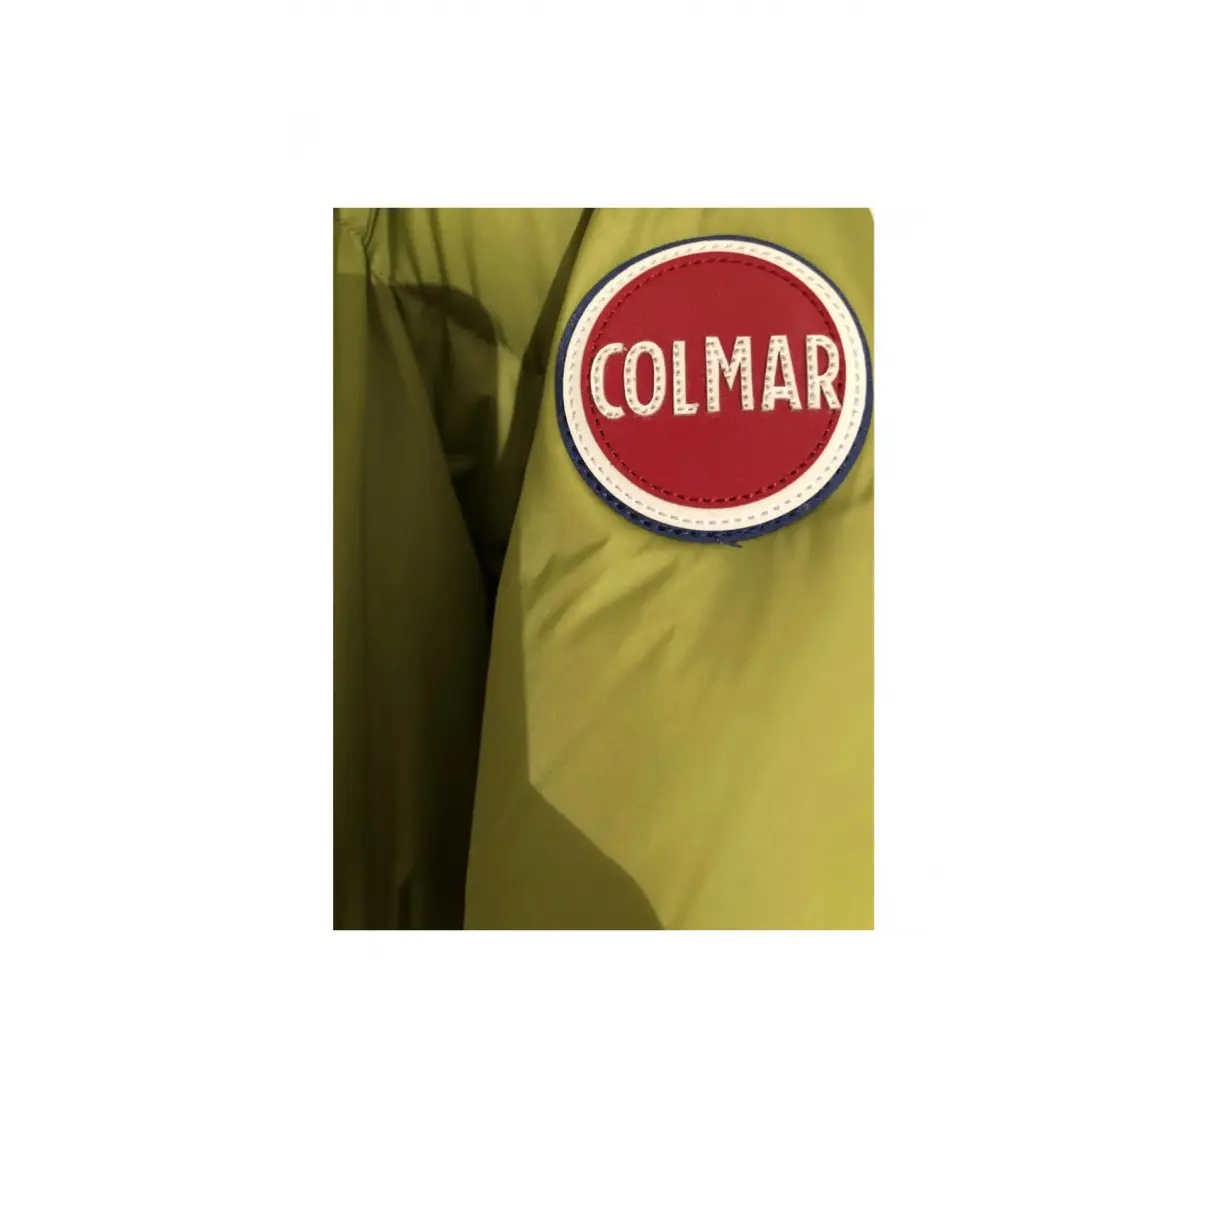 Buy Colmar Coat online